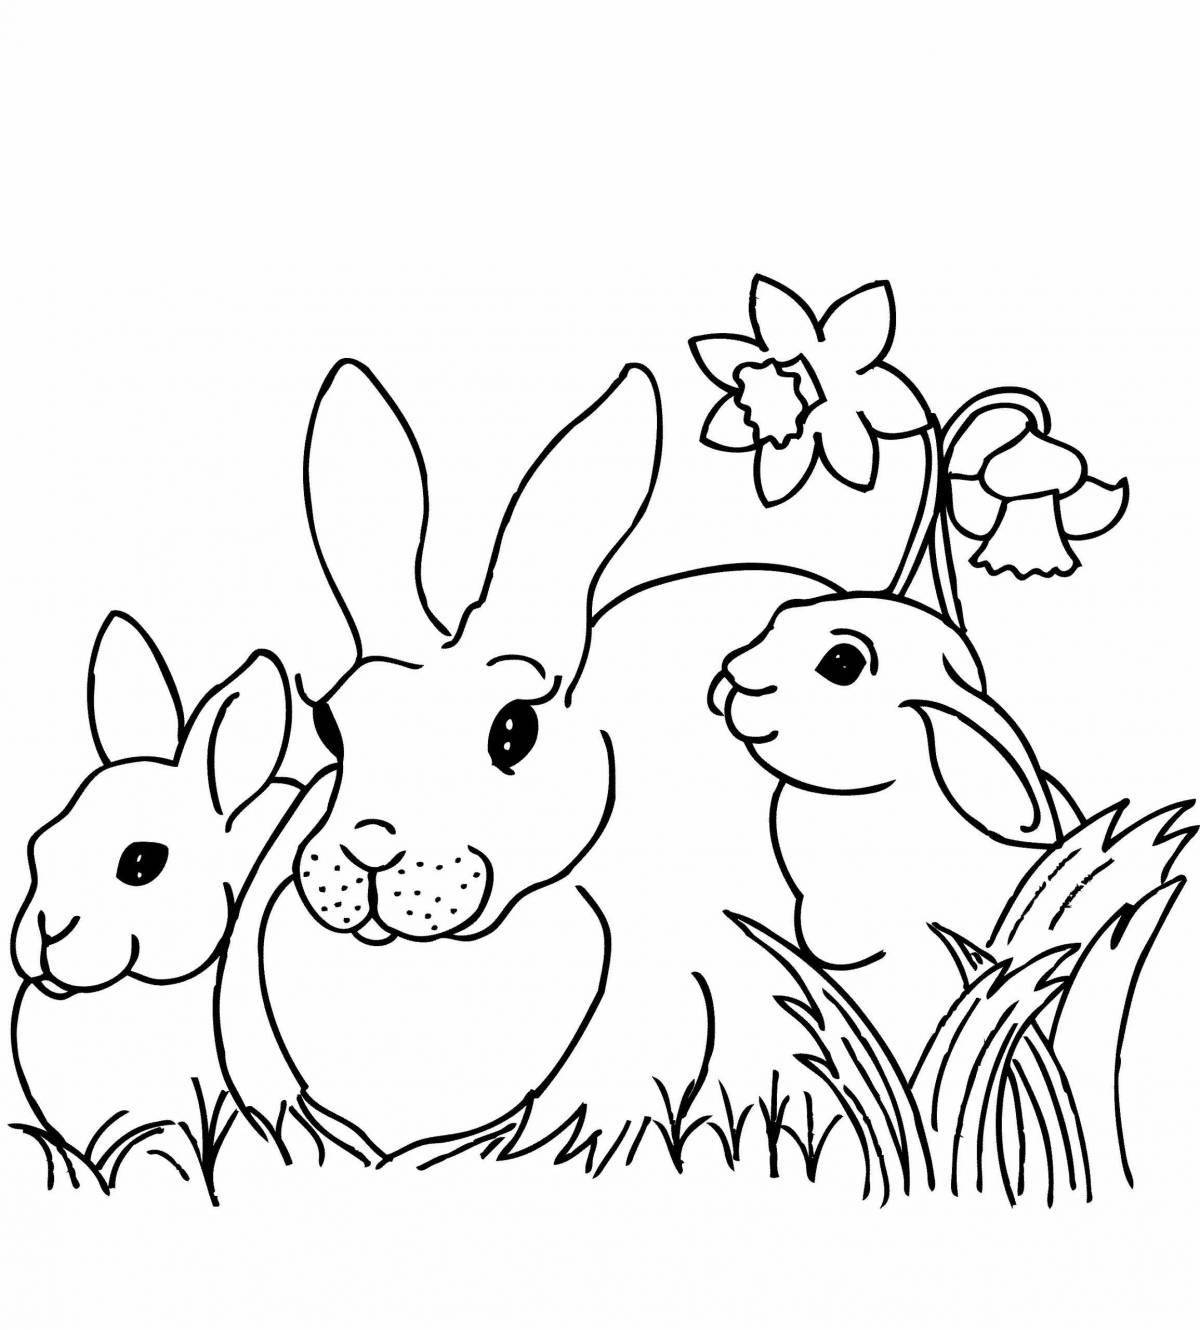 Веселые раскраски кролики для девочек